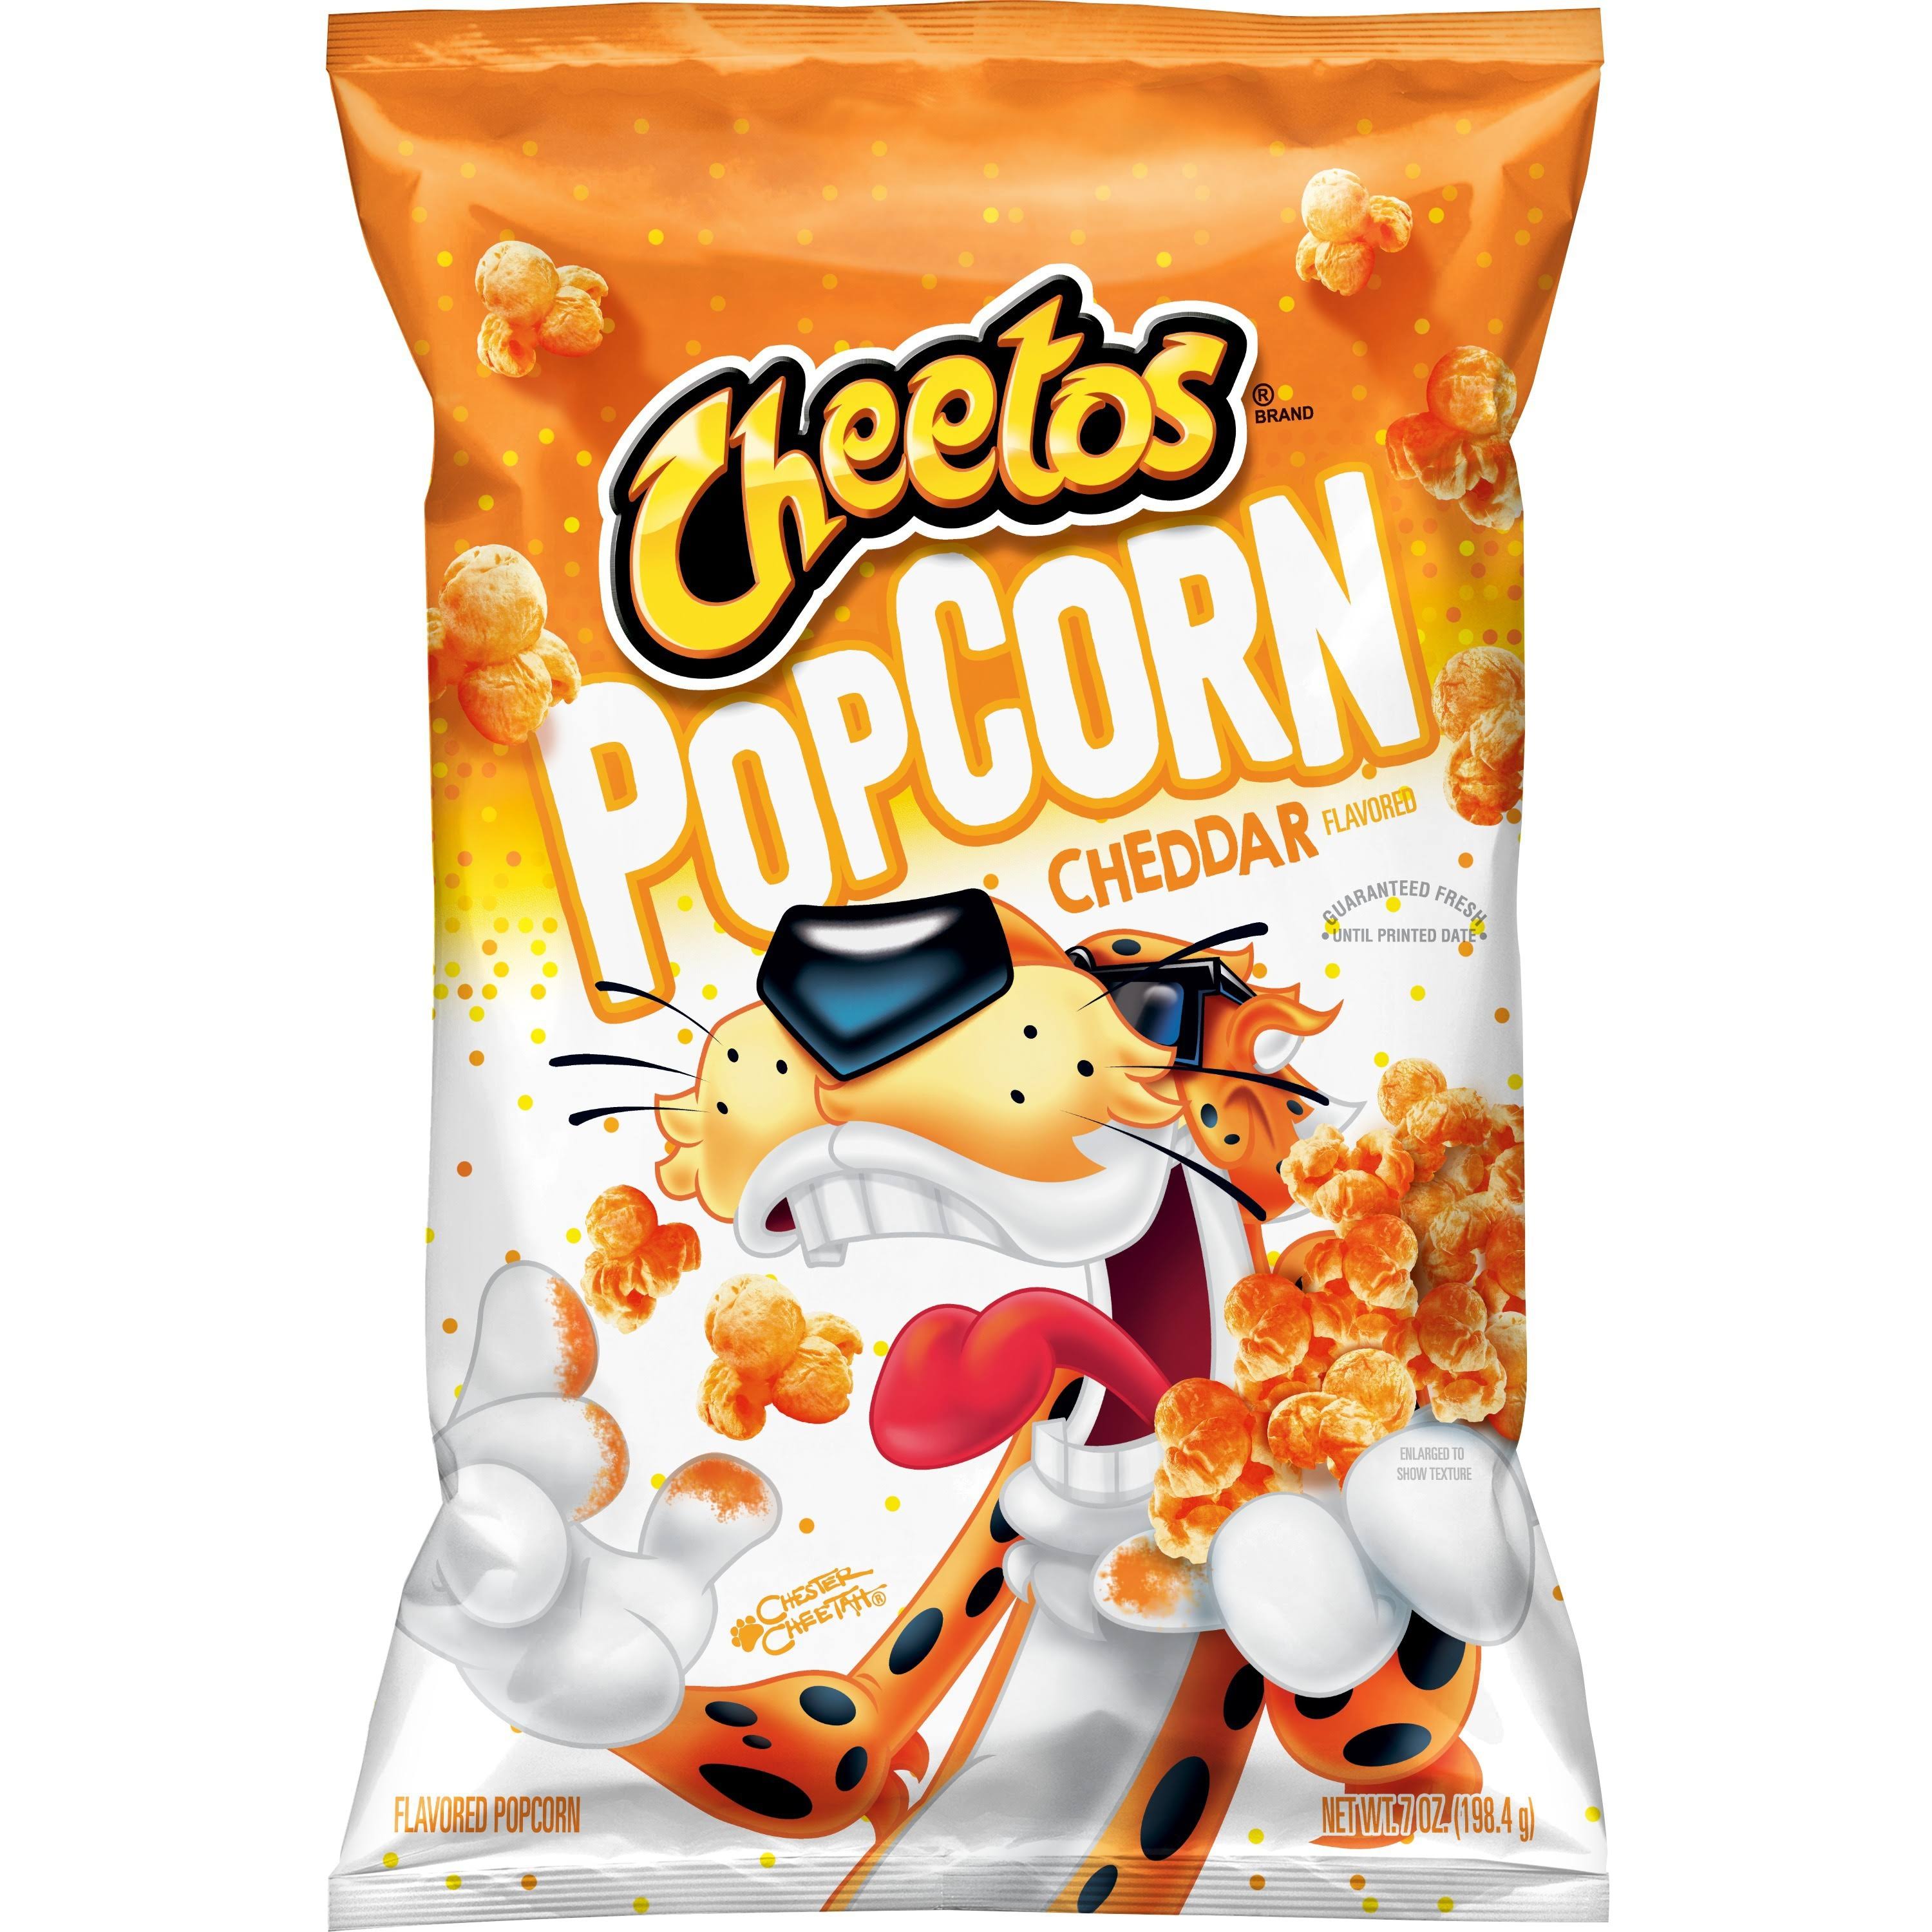 Cheetos Popcorn, Cheddar Flavored - 7 oz